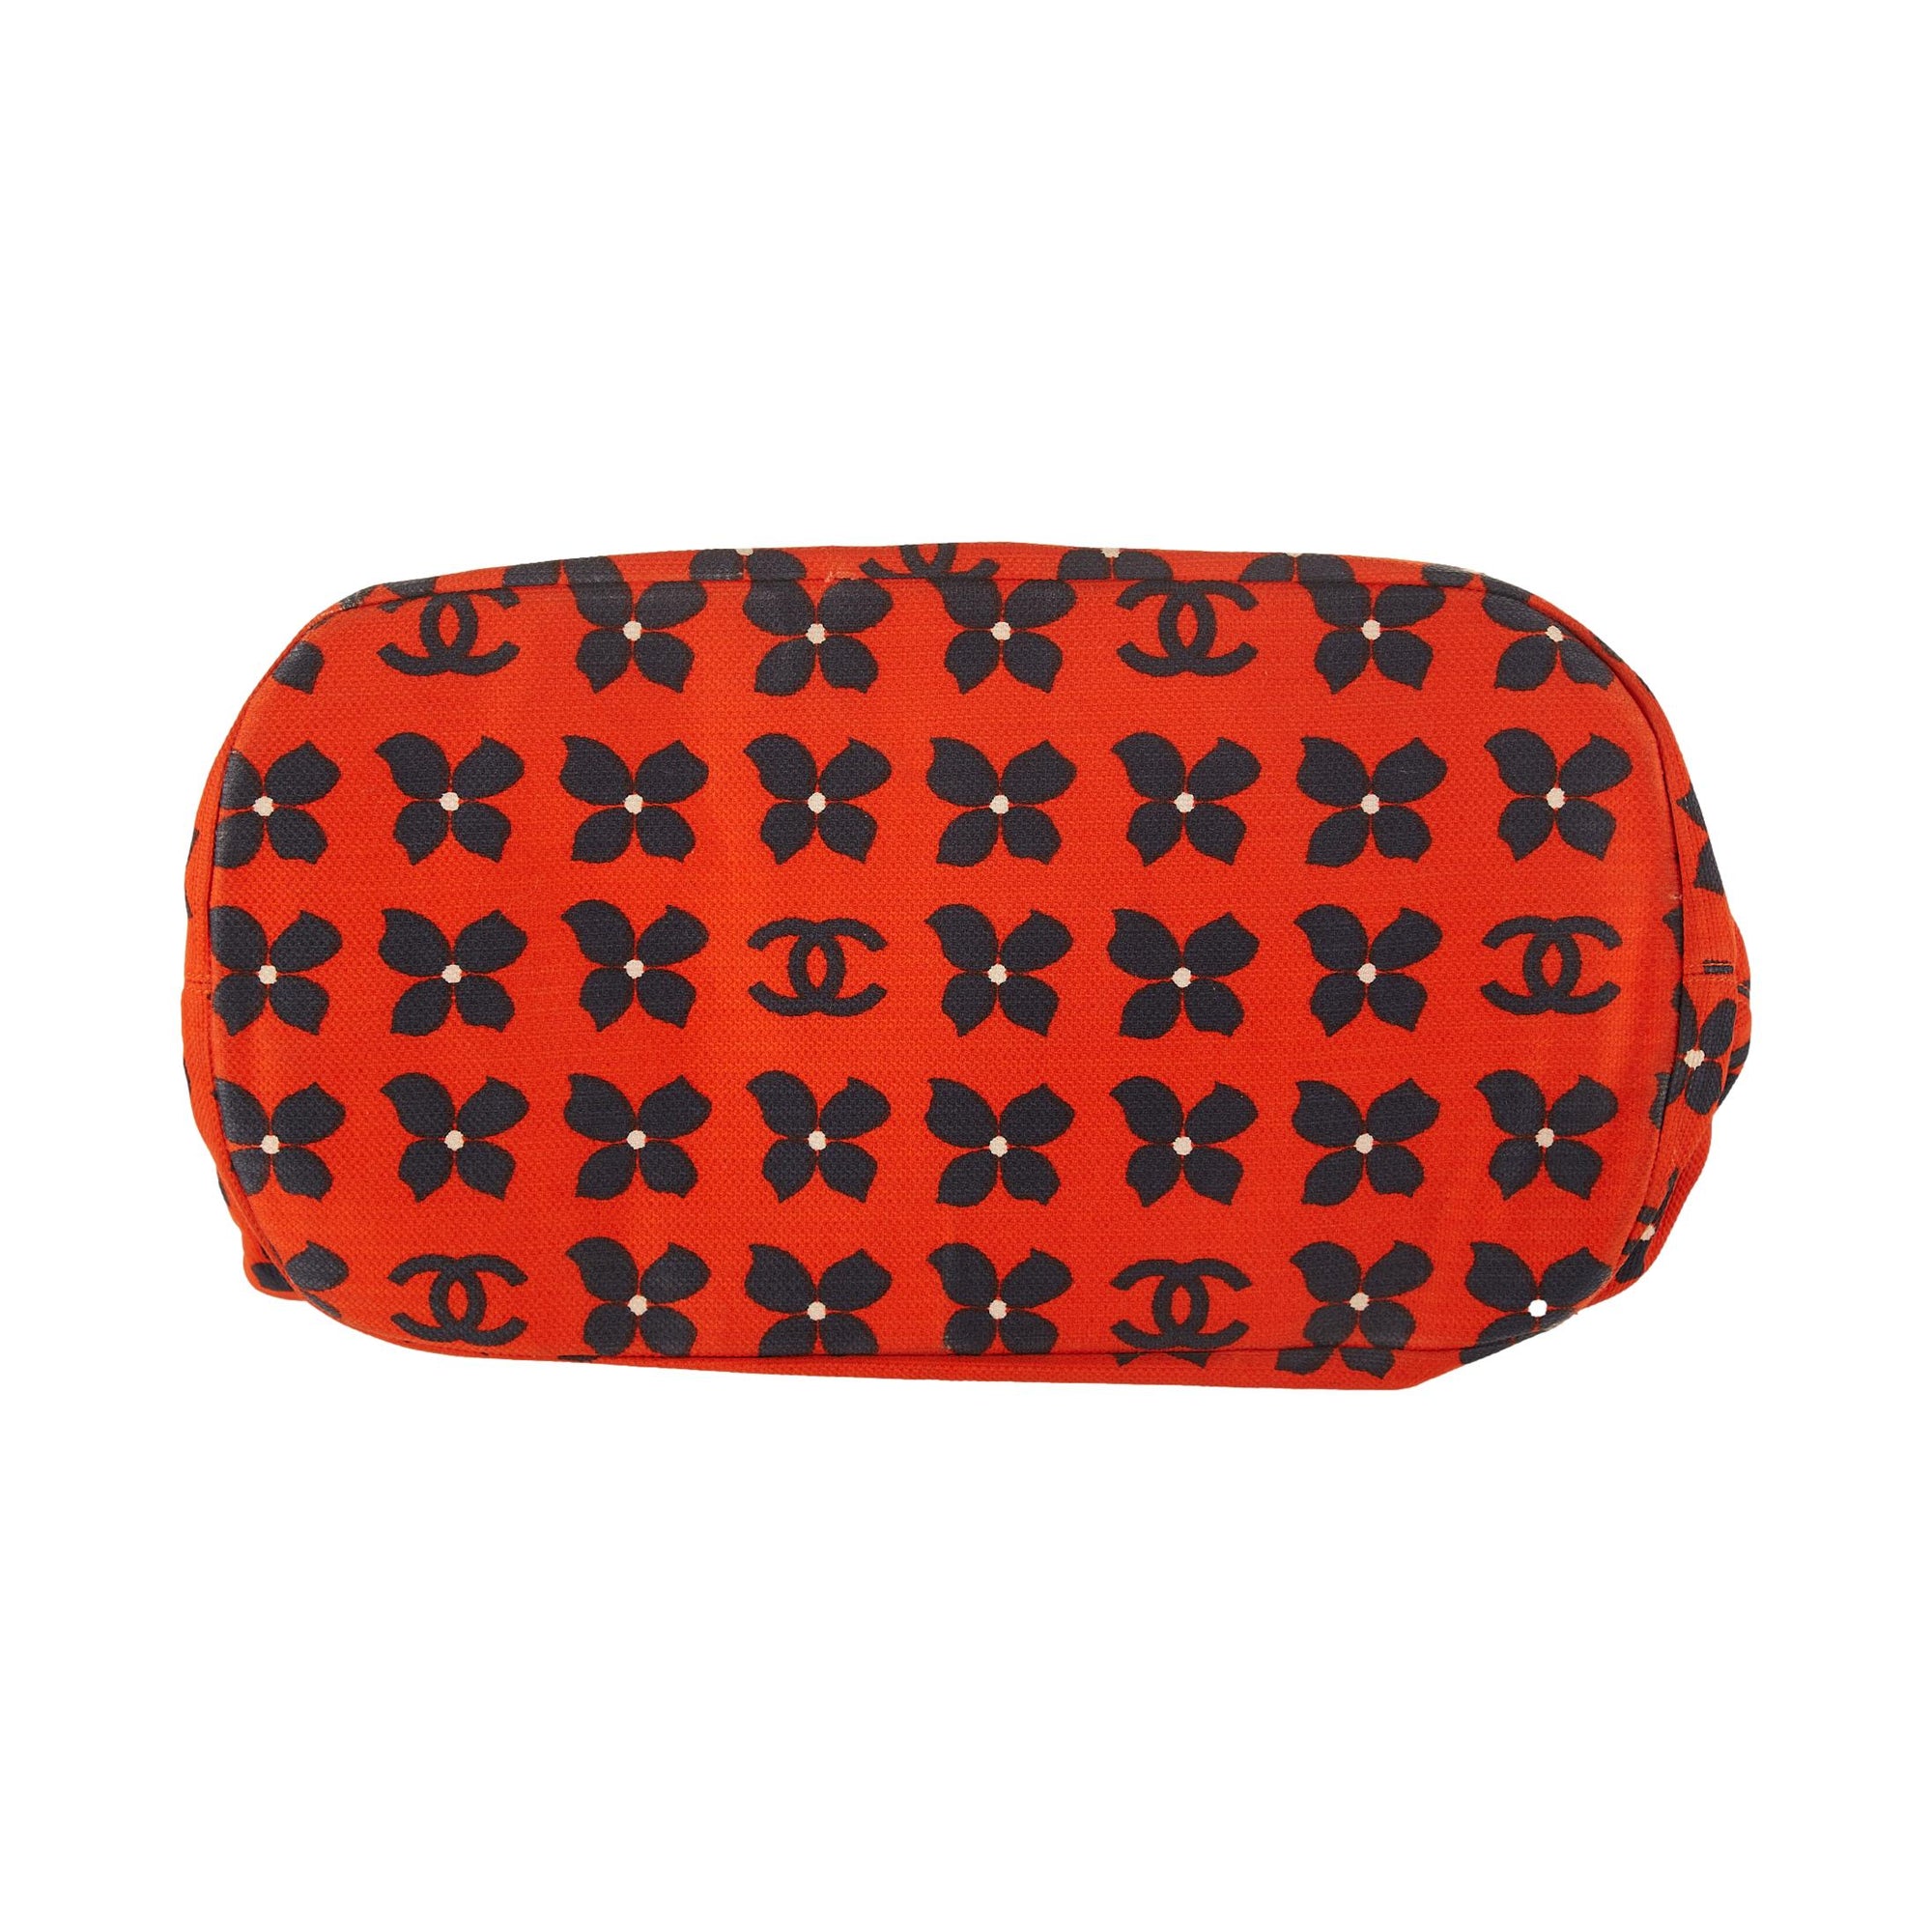 Chanel Red Floral Jumbo Shoulder Bag